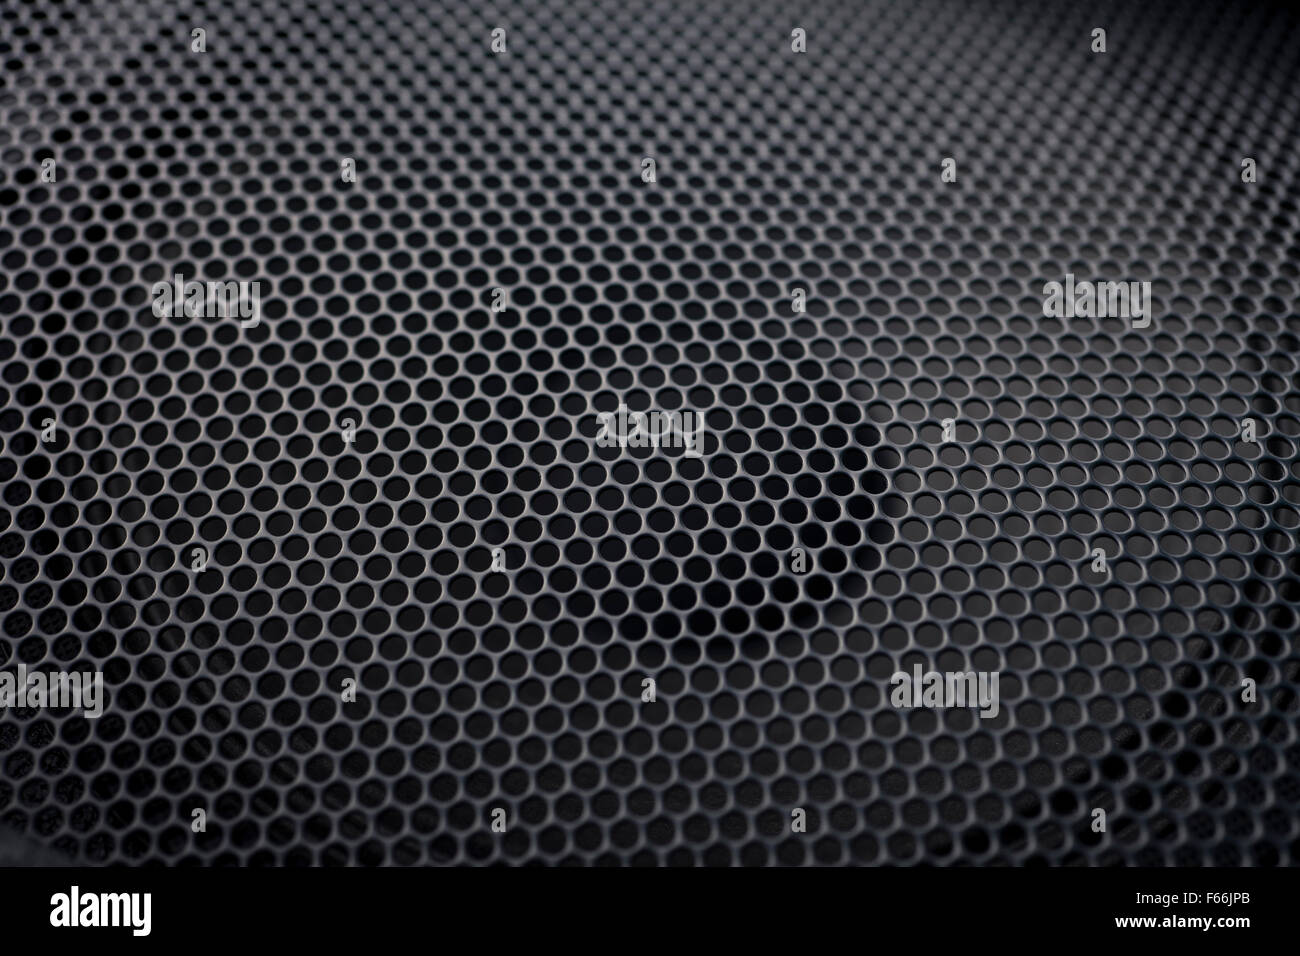 Schwarzen strukturierte Lautsprecher Gitter Hintergrund Stockfotografie -  Alamy